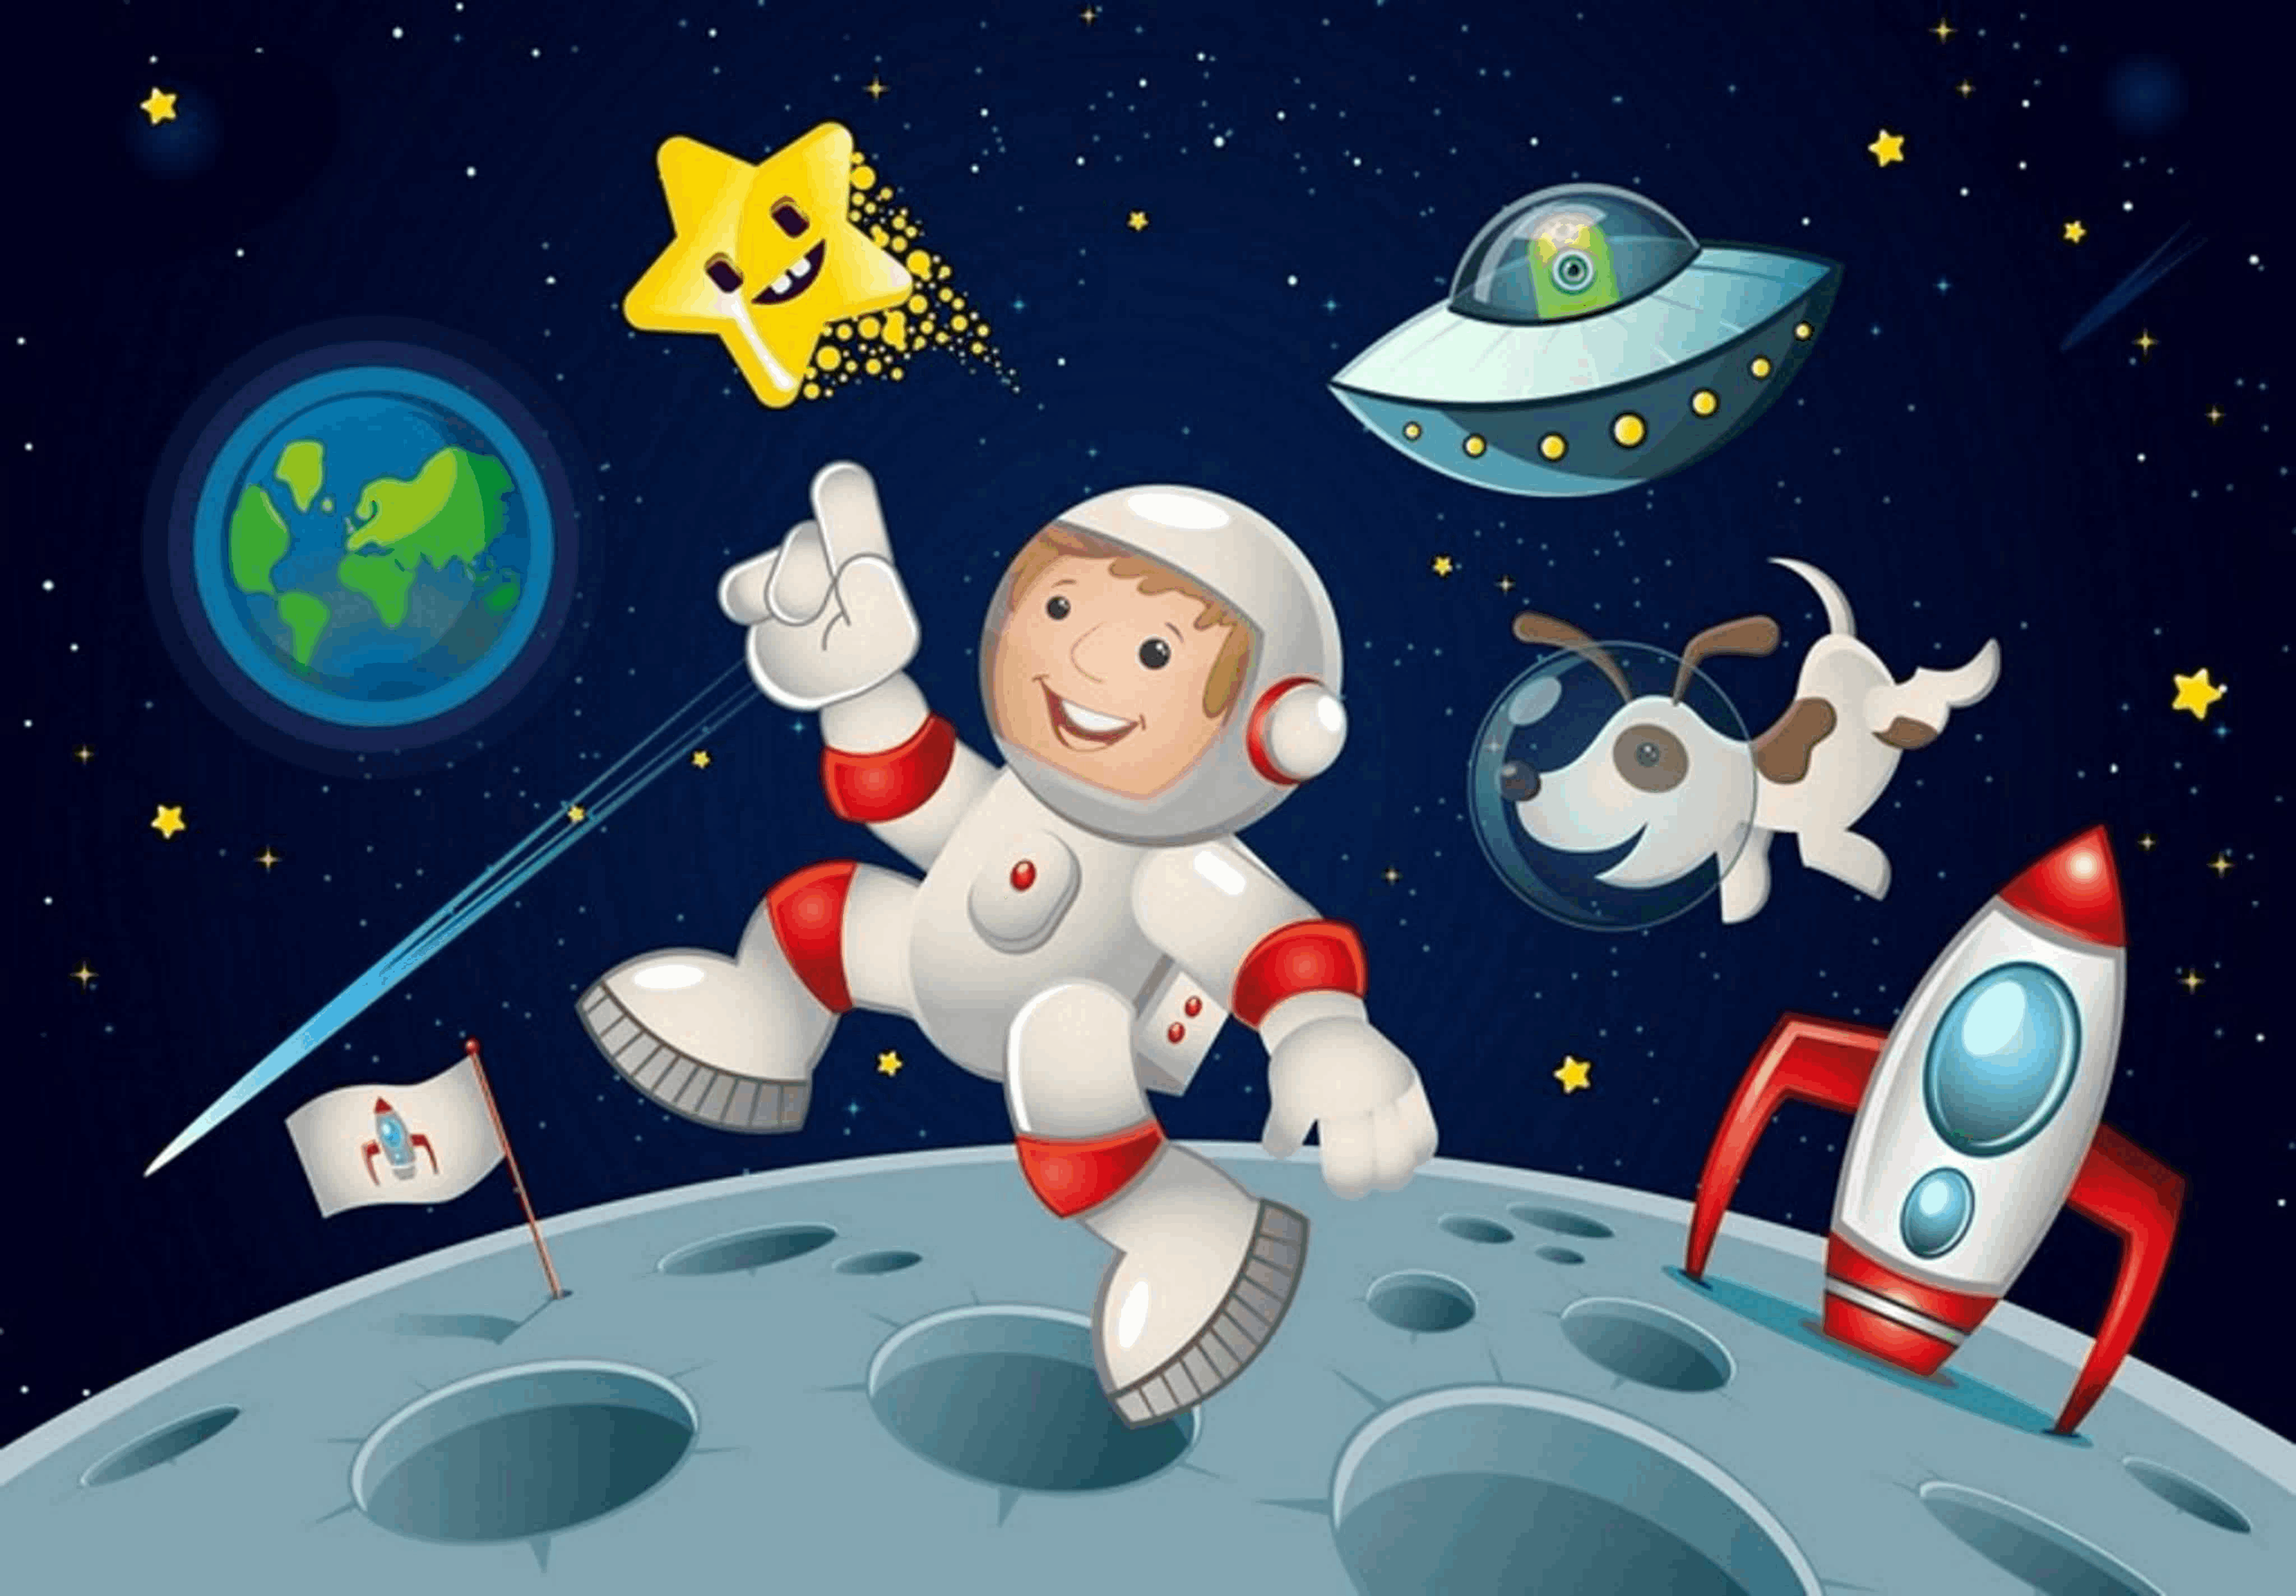 Картинки ко дню космонавтики для детей. Космическое пространство для детей. Космическое путешествие для детей. Космос для детей дошкольного возраста. Космическая тематика для детей.